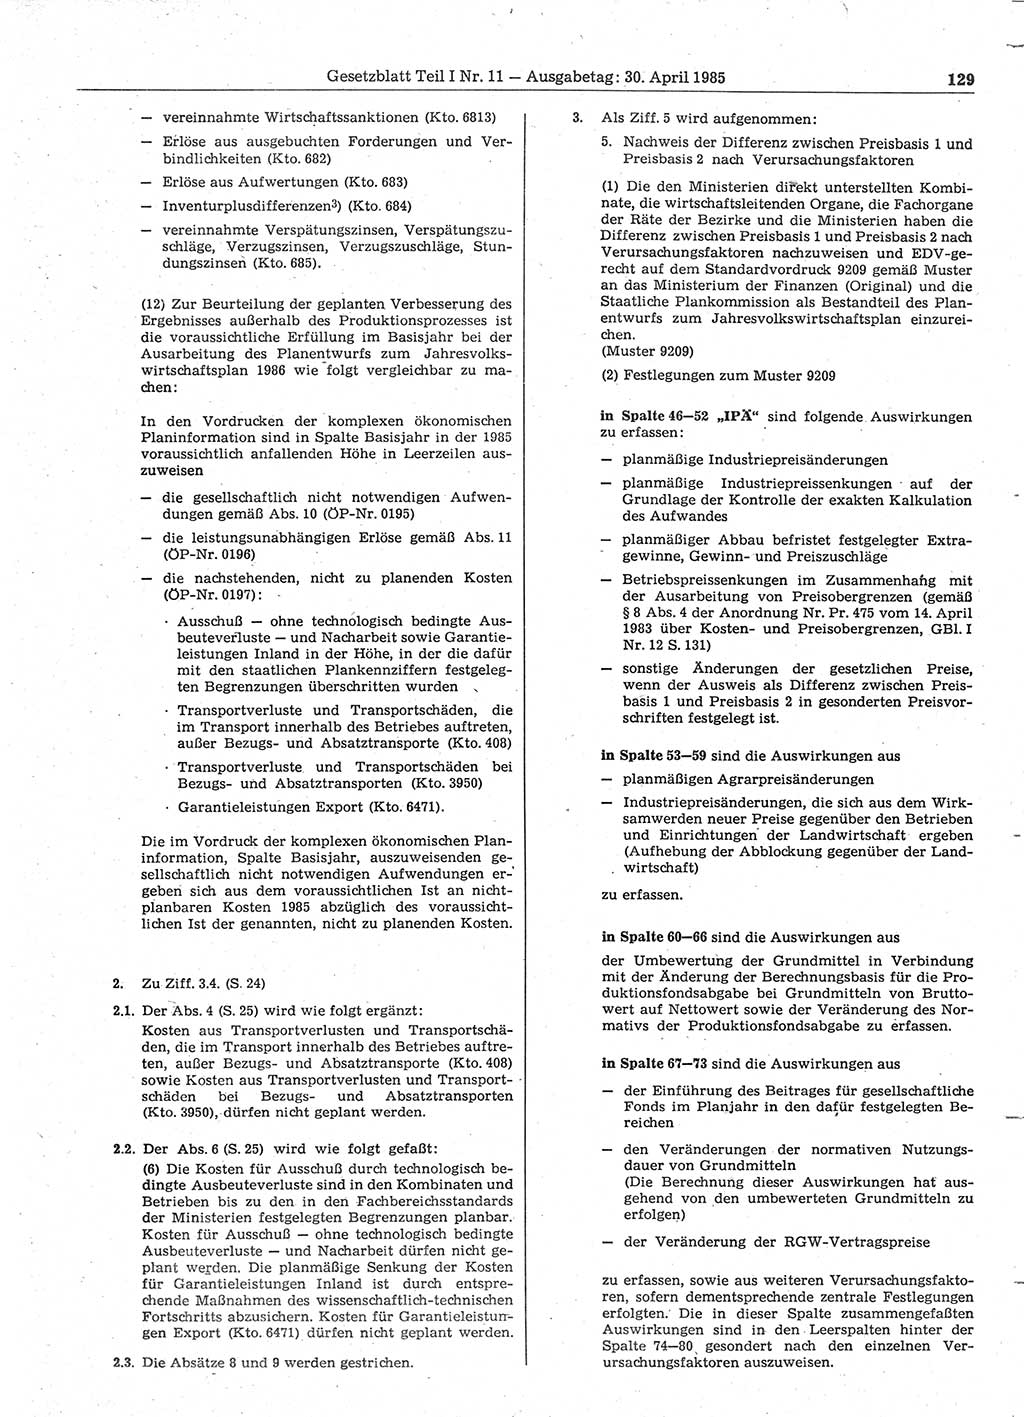 Gesetzblatt (GBl.) der Deutschen Demokratischen Republik (DDR) Teil Ⅰ 1985, Seite 129 (GBl. DDR Ⅰ 1985, S. 129)